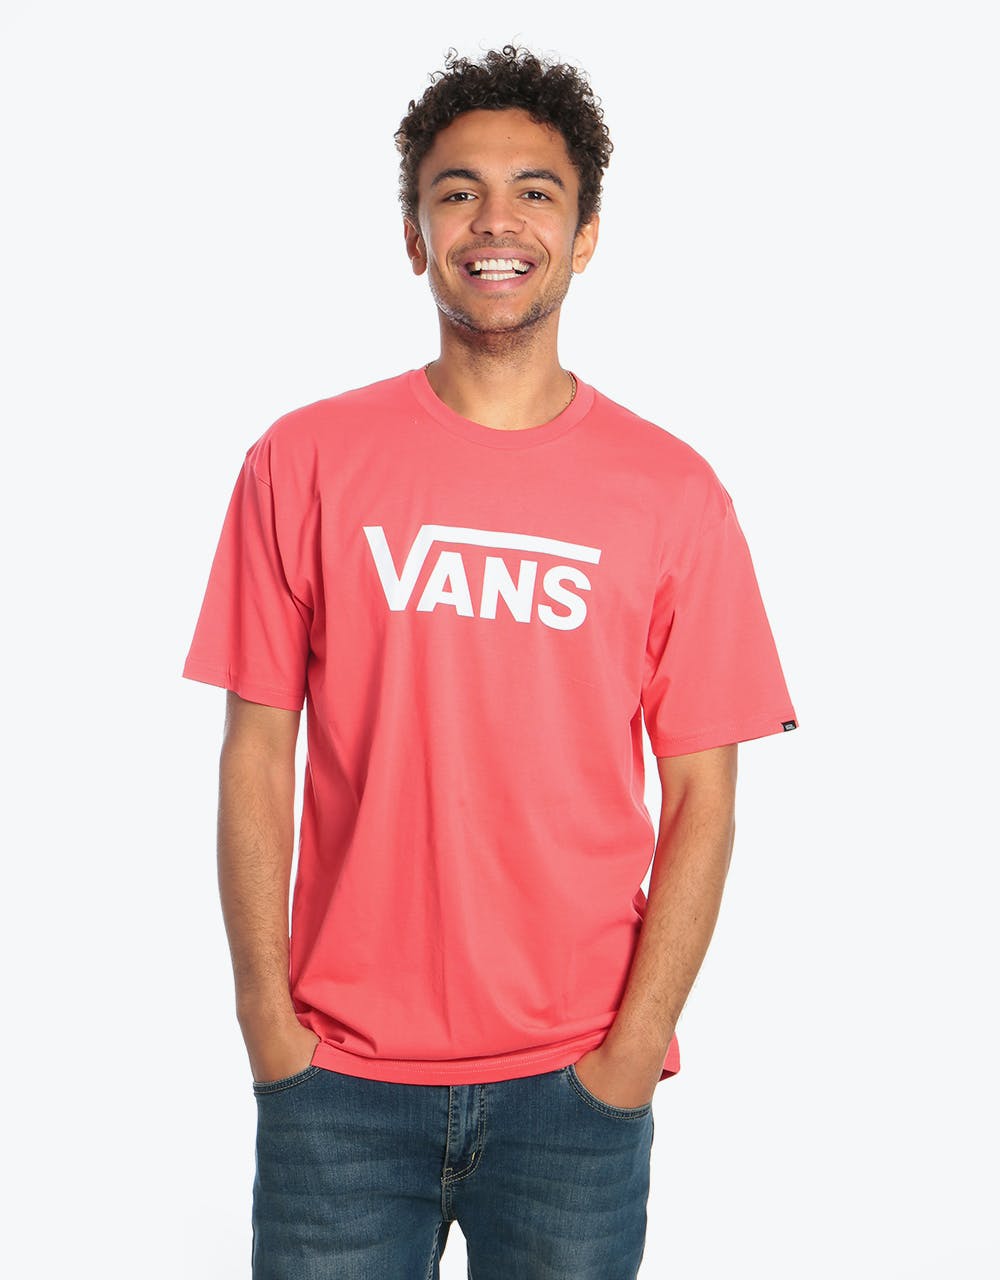 Vans Classic T-Shirt - Hibiscus/White